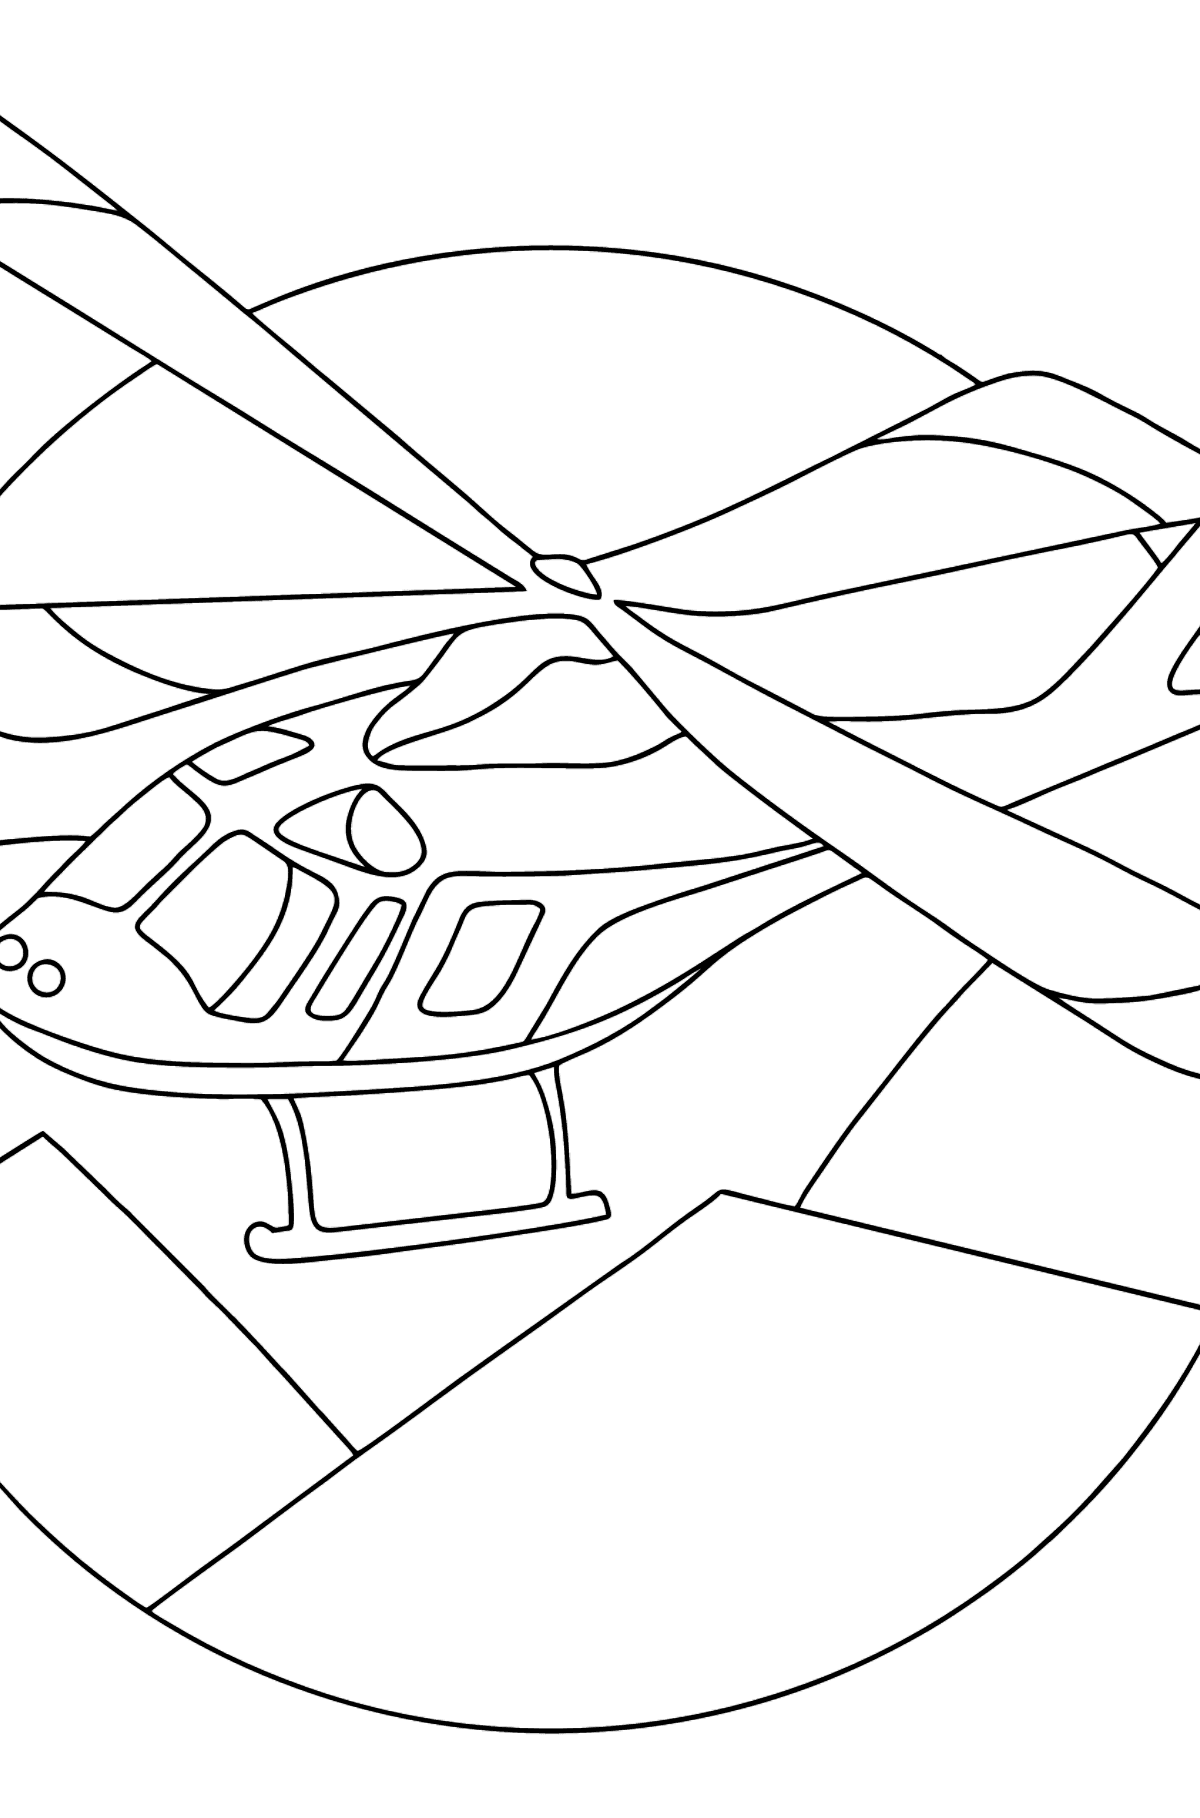 Desenho de helicóptero esportivo para colorir - Imagens para Colorir para Crianças